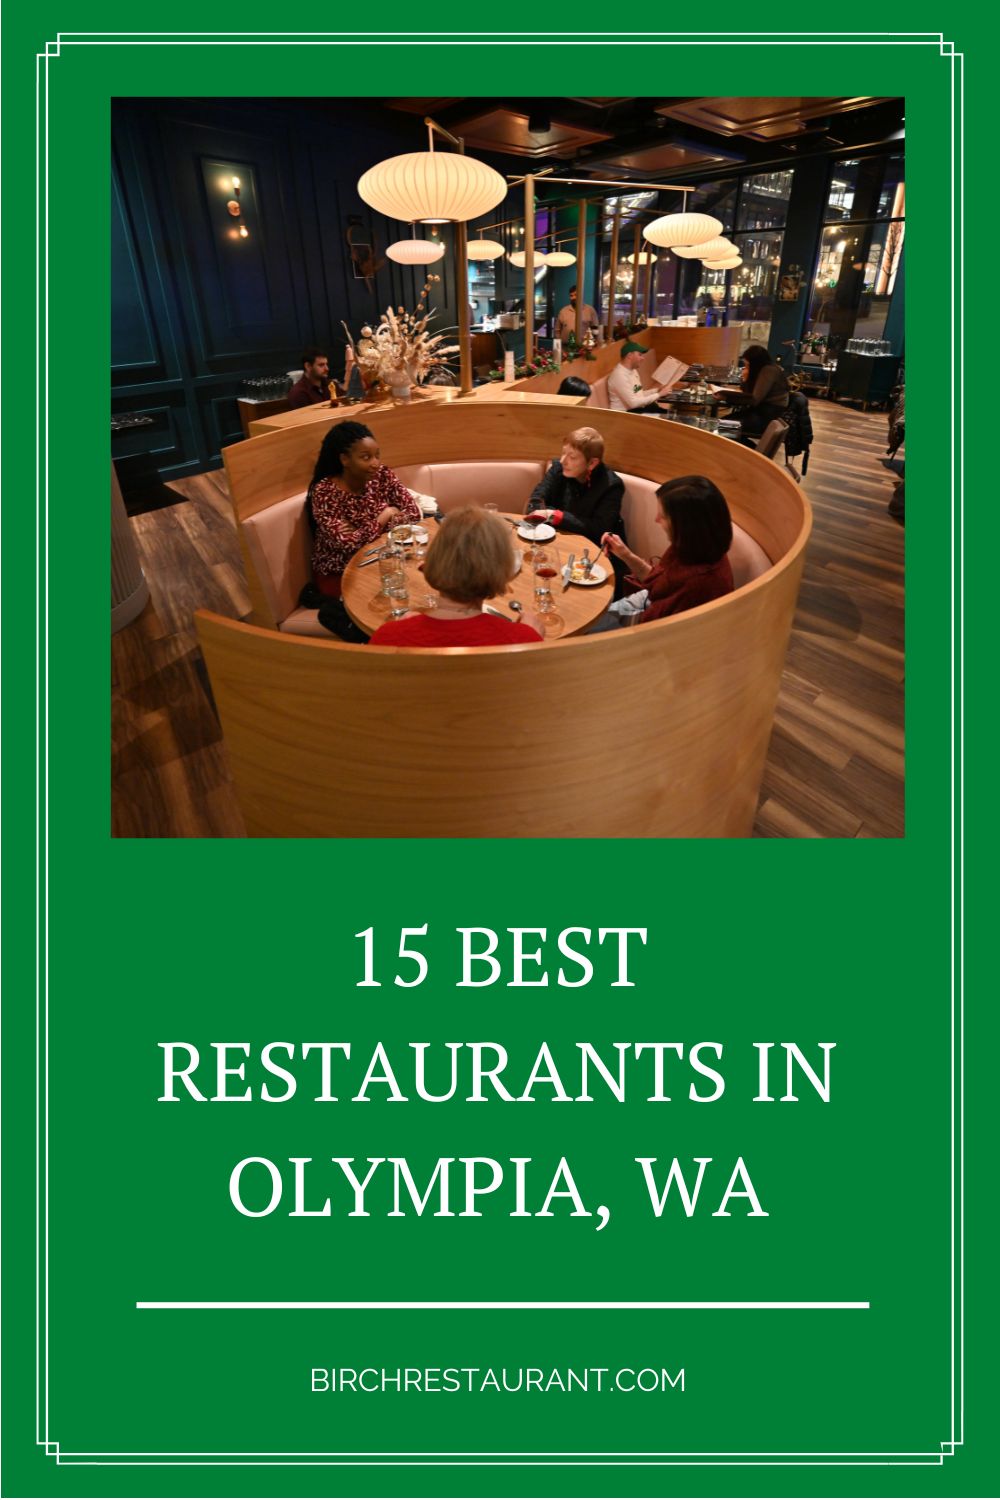 Best Restaurants in Olympia